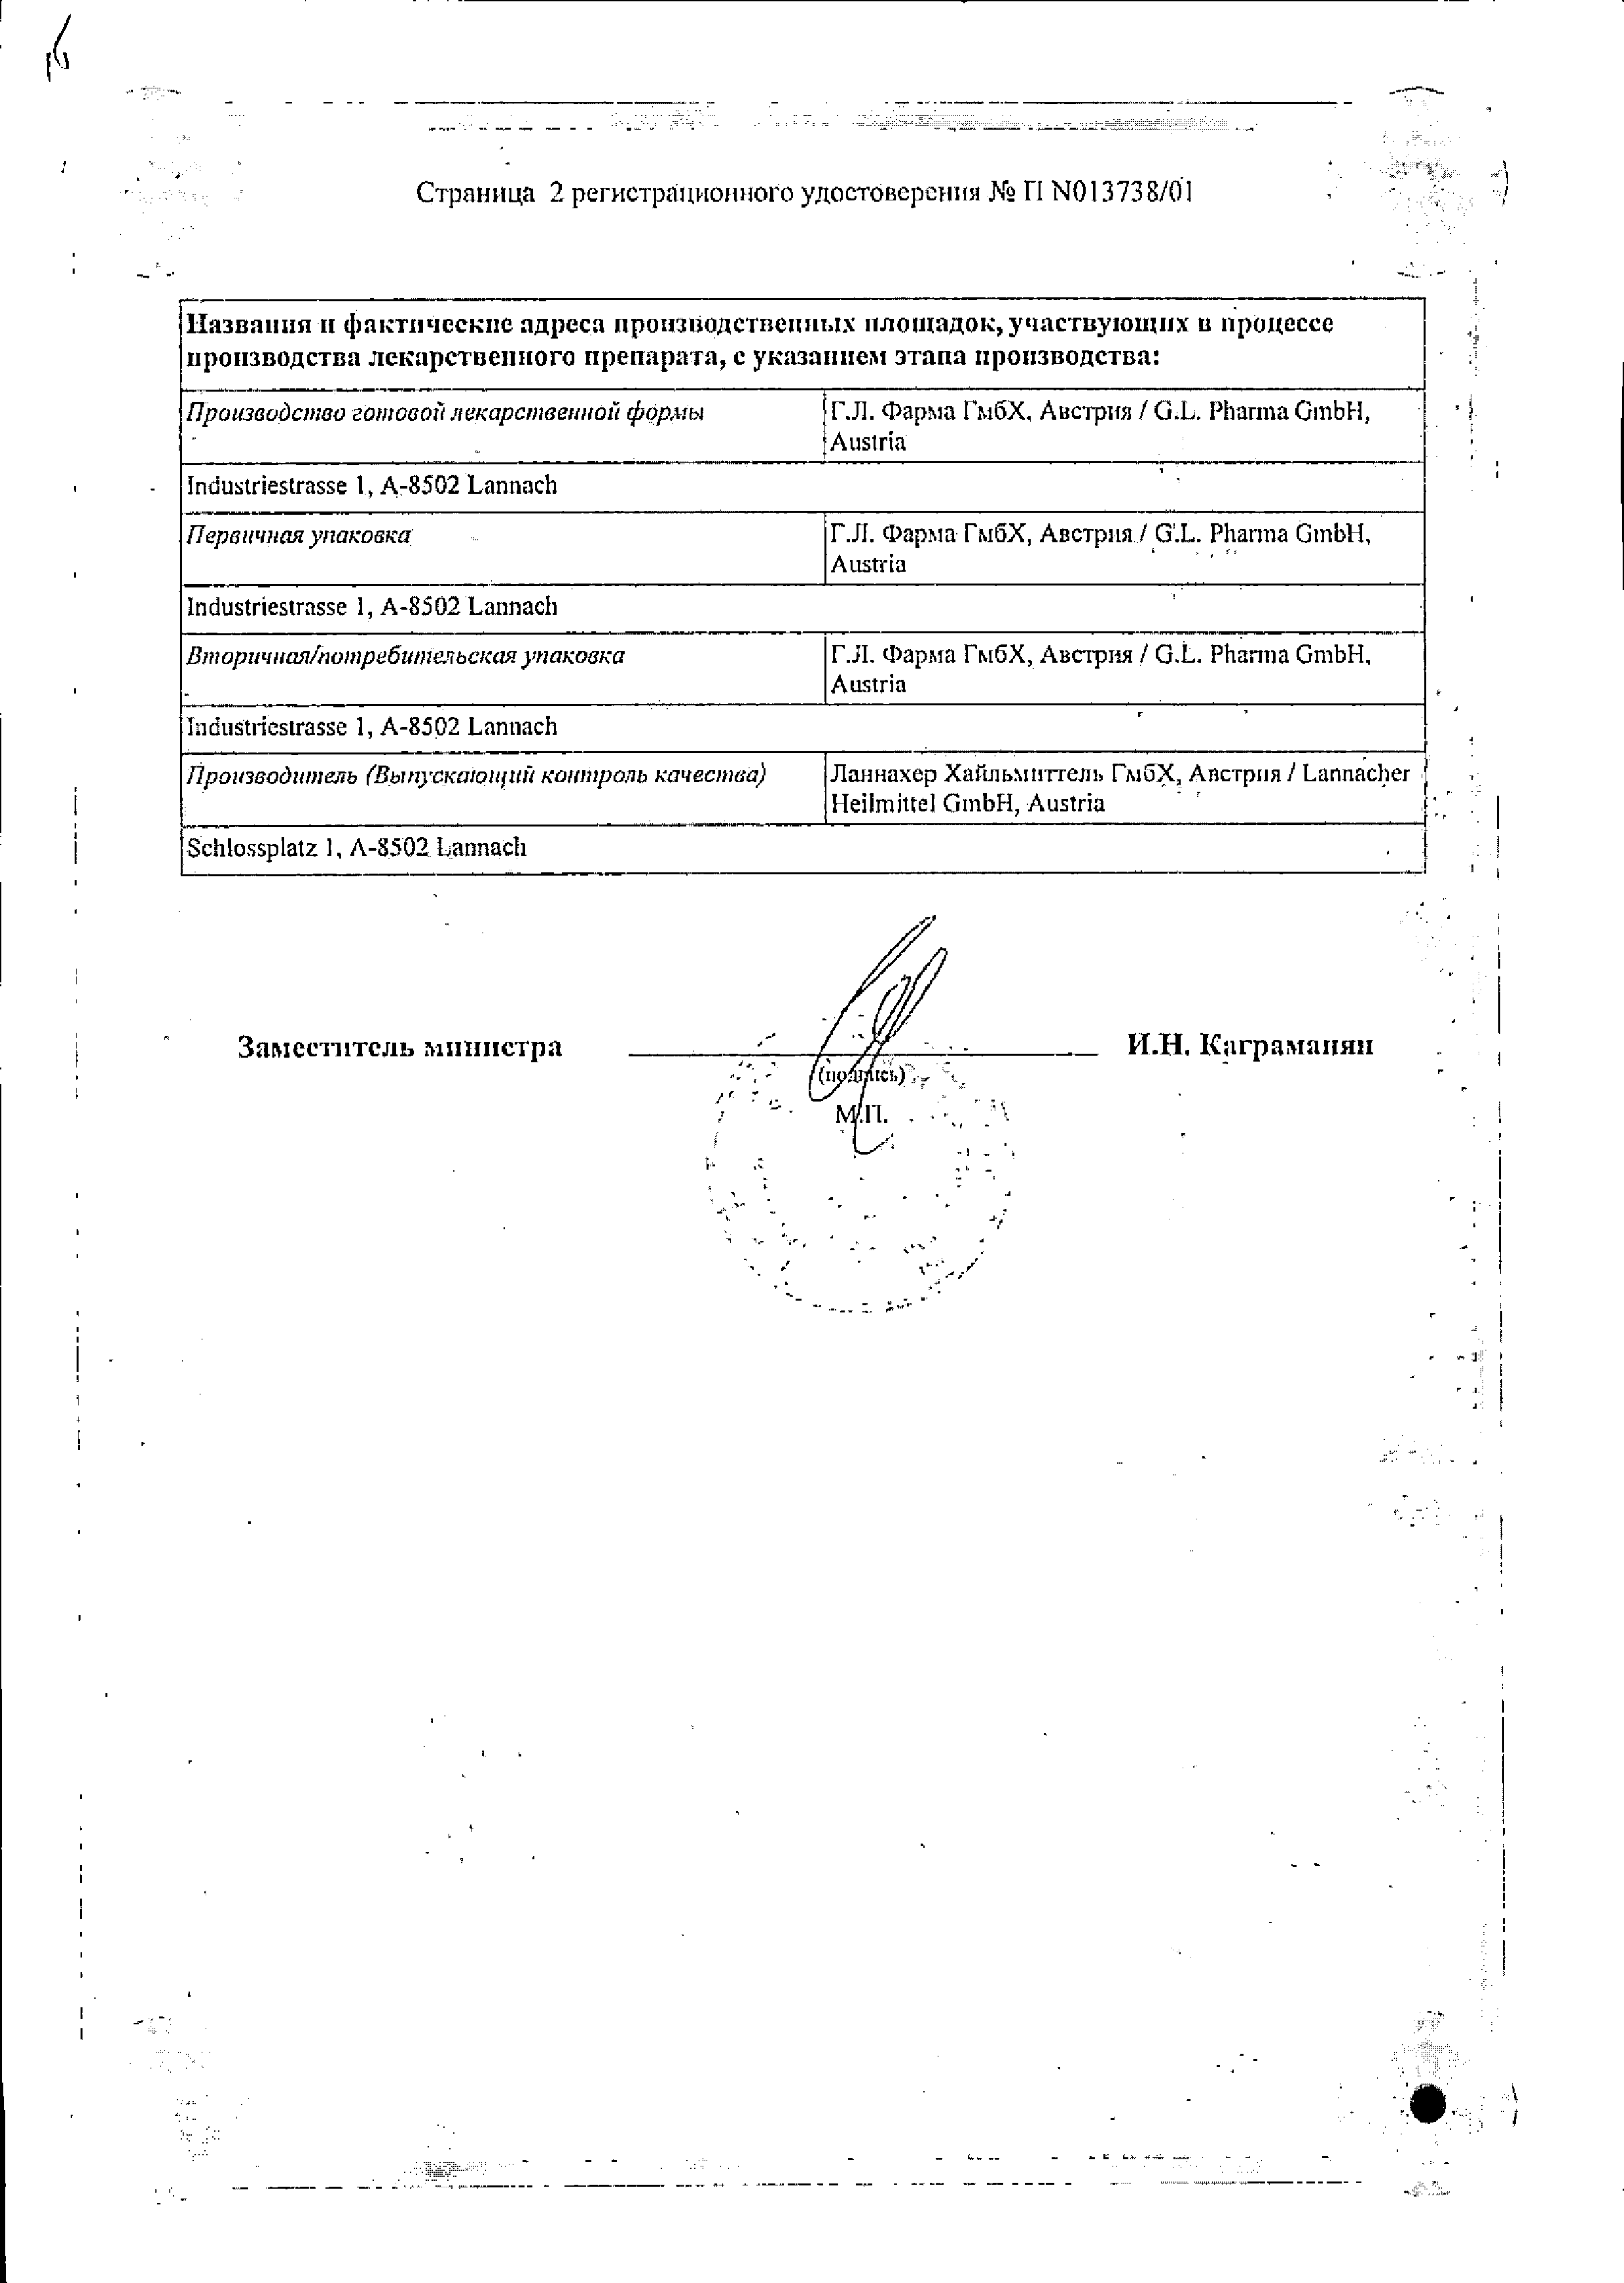 Дилтиазем Ланнахер сертификат